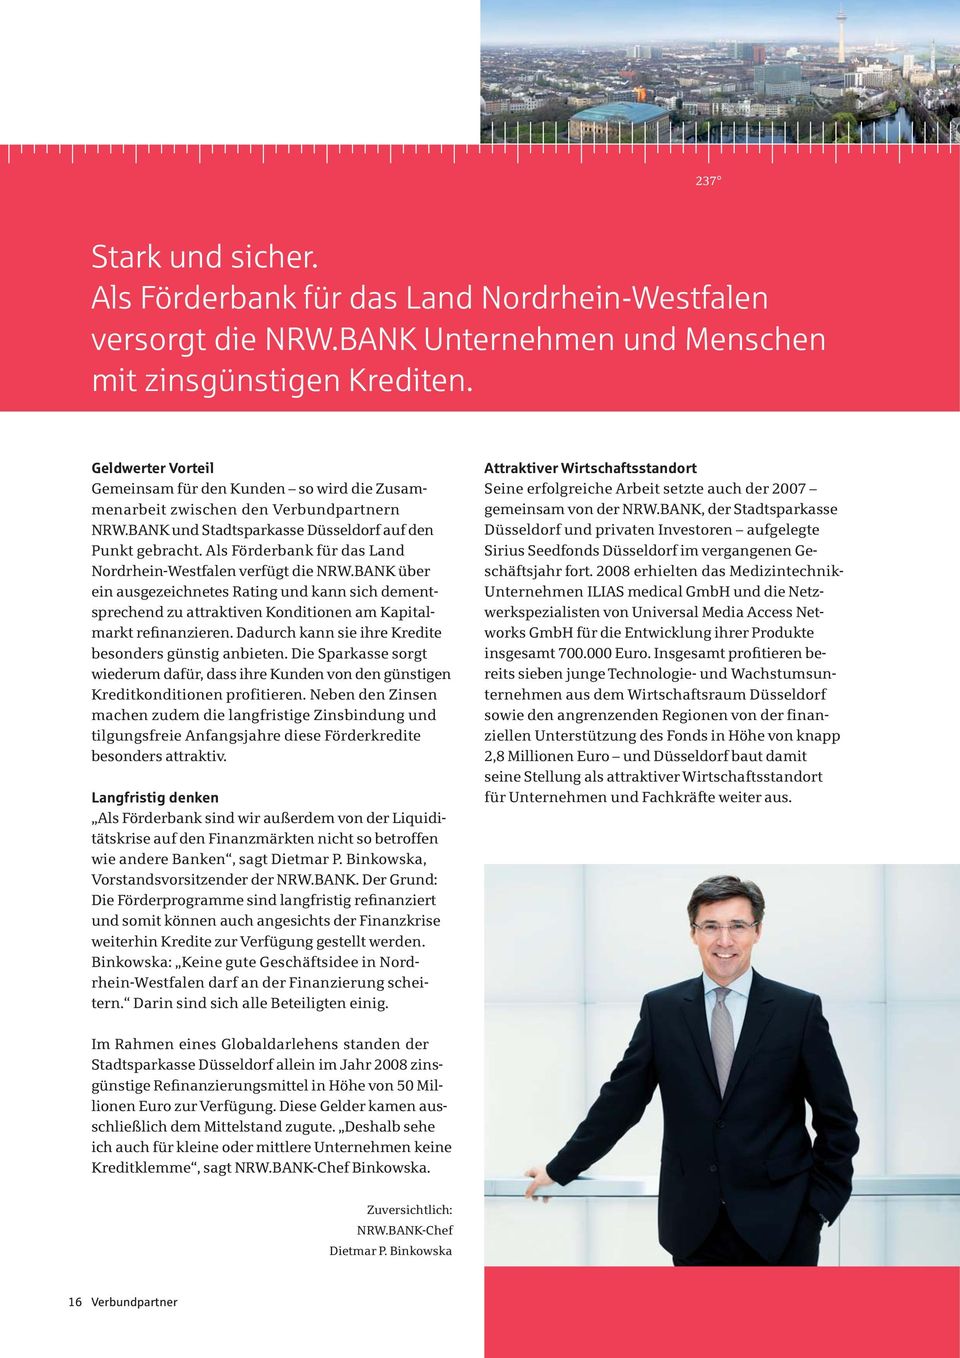 Als Förderbank für das Land Nordrhein-Westfalen verfügt die NRW.BANK über ein ausgezeichnetes Rating und kann sich dementsprechend zu attraktiven Konditionen am Kapitalmarkt refinanzieren.